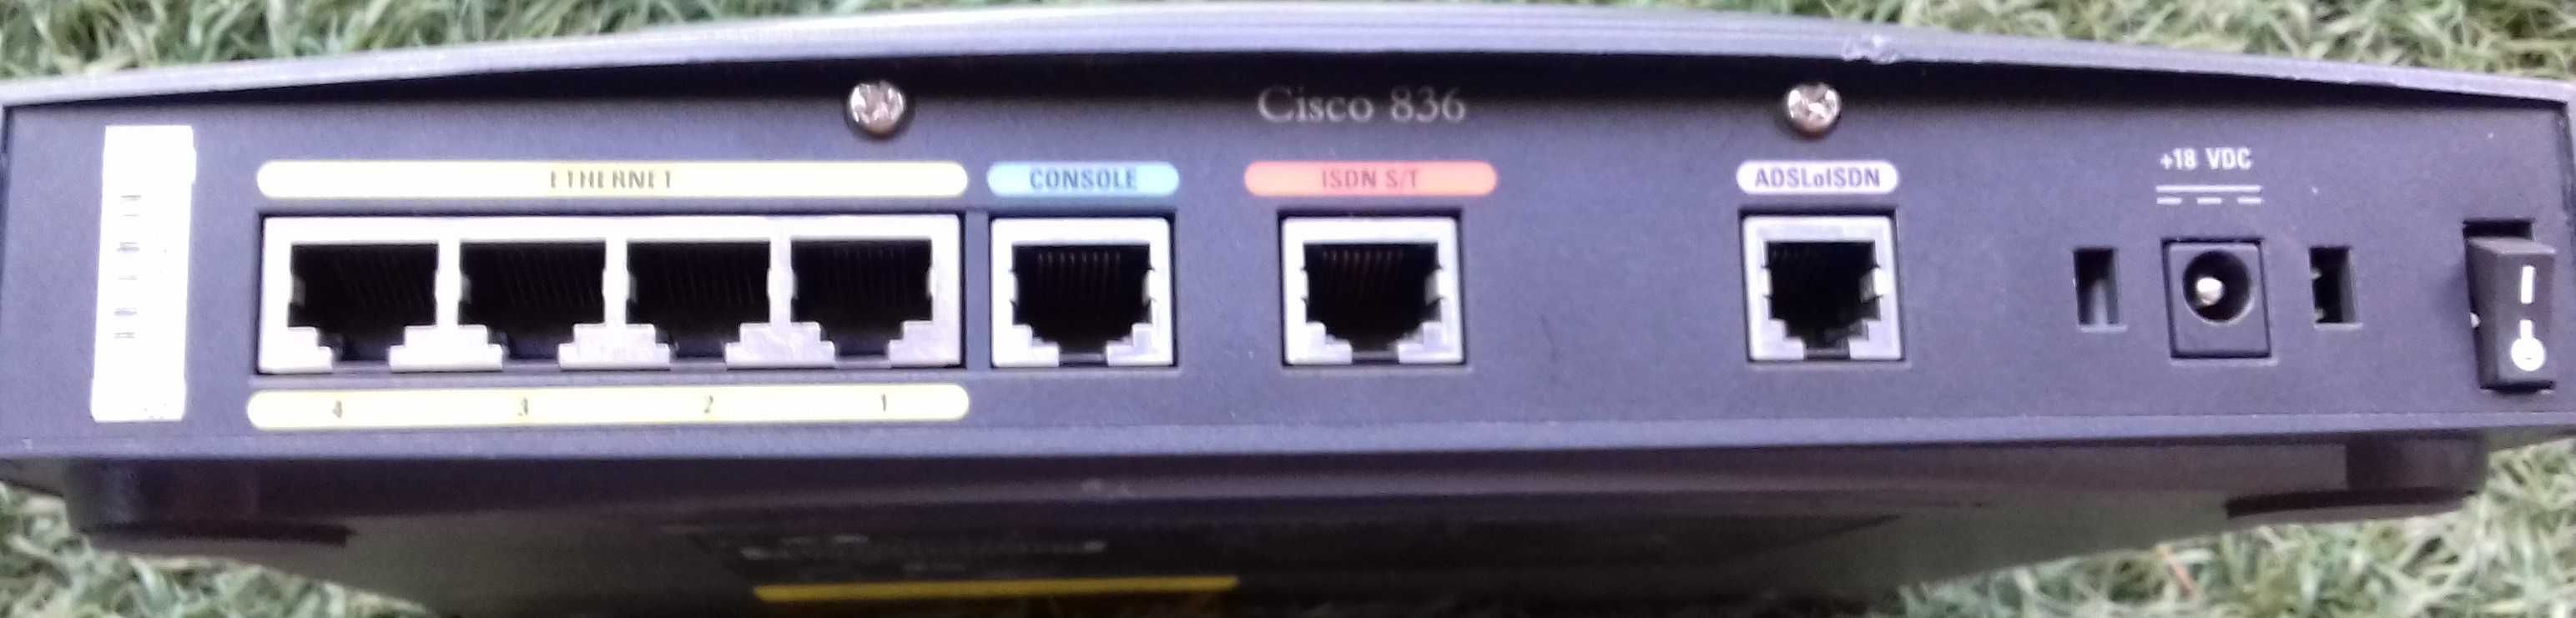 Router Cisco 836